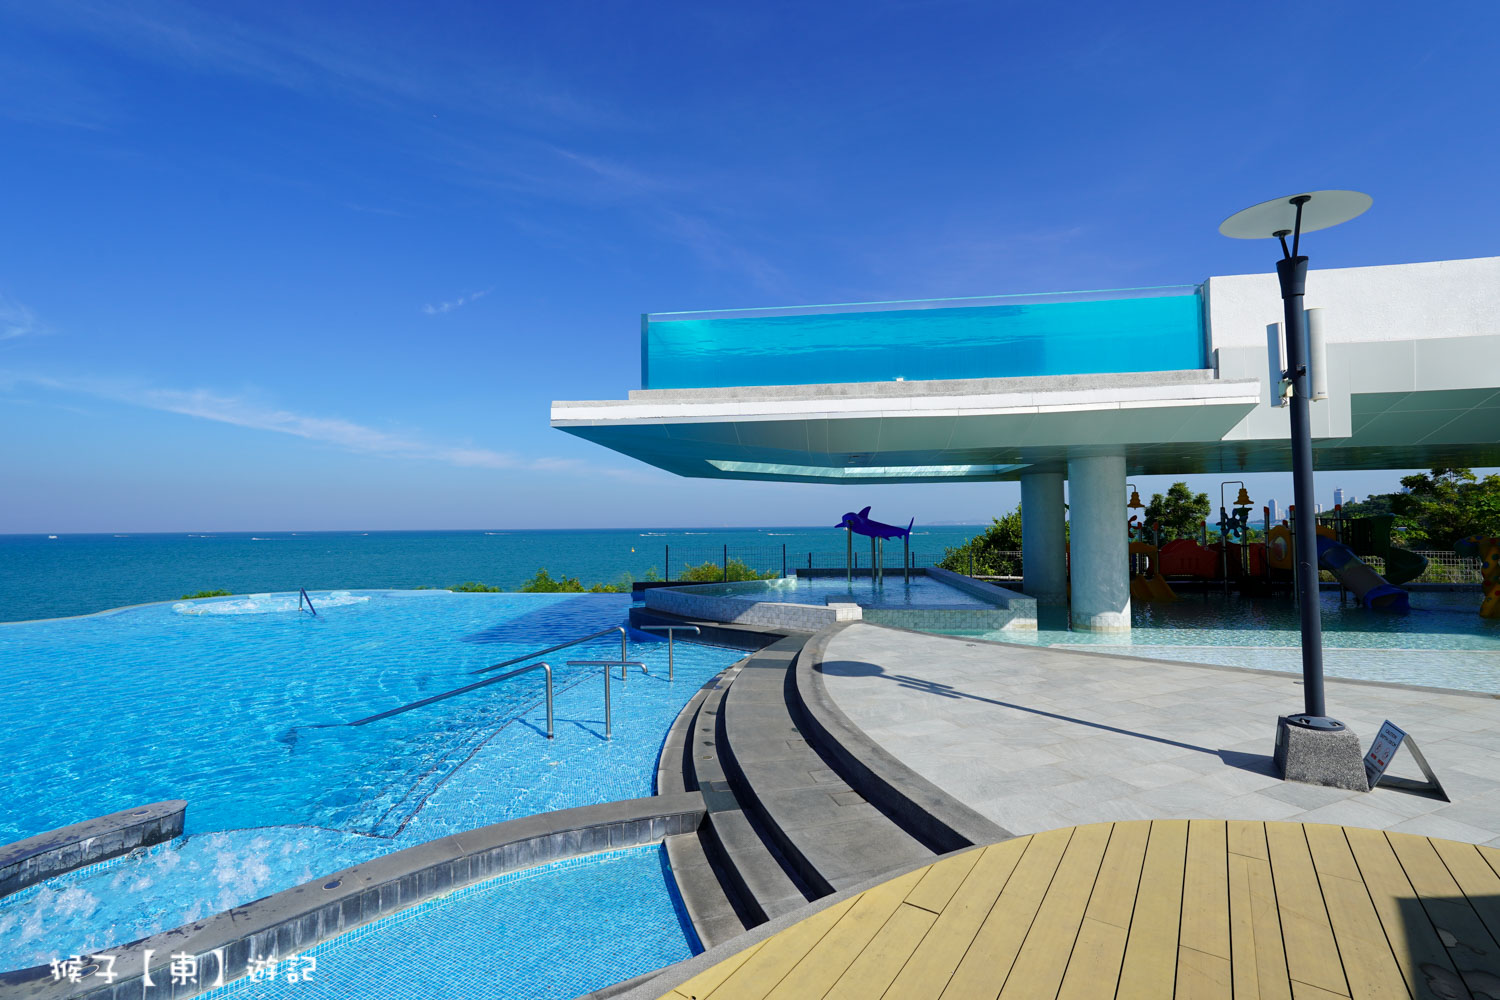 網站近期文章：[泰國] Royal Cliff Beach Terrace Hotel芭達雅皇家克里夫海灘露台飯店 無敵海景房 無邊際泳池 渡假住這裡